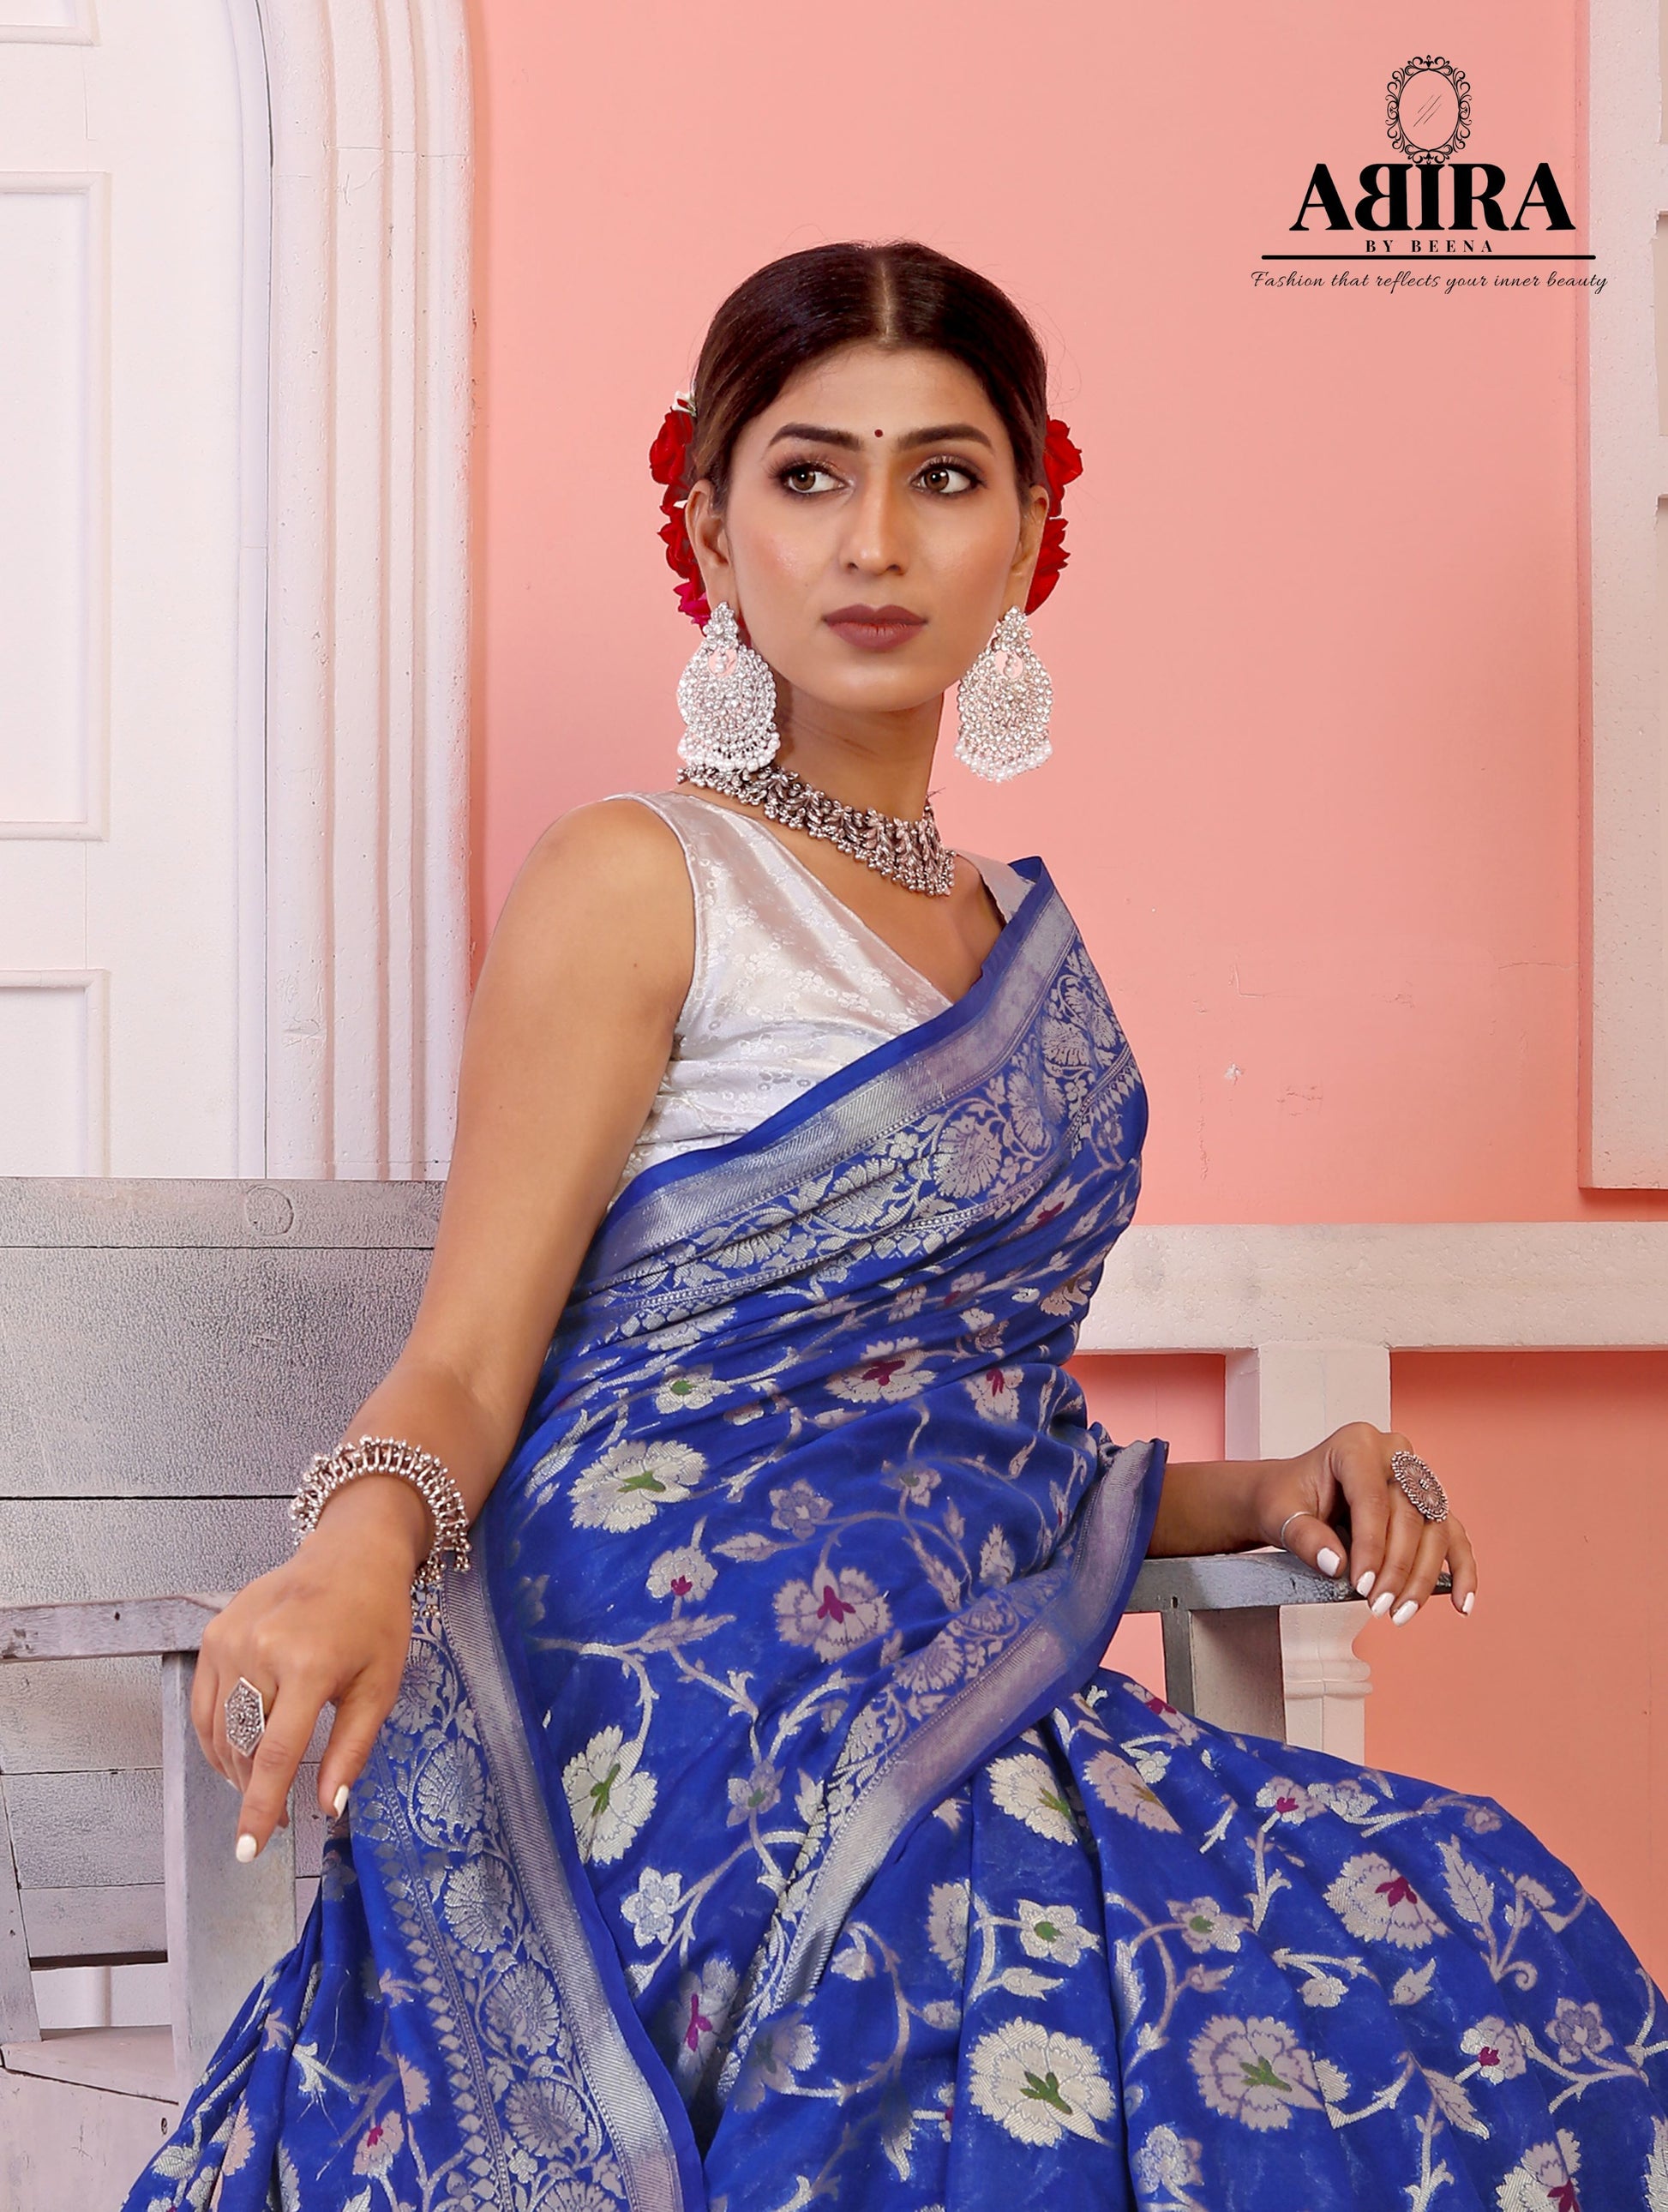 Blue Banaras Soft Georgette Jaal silk - AbirabyBeena